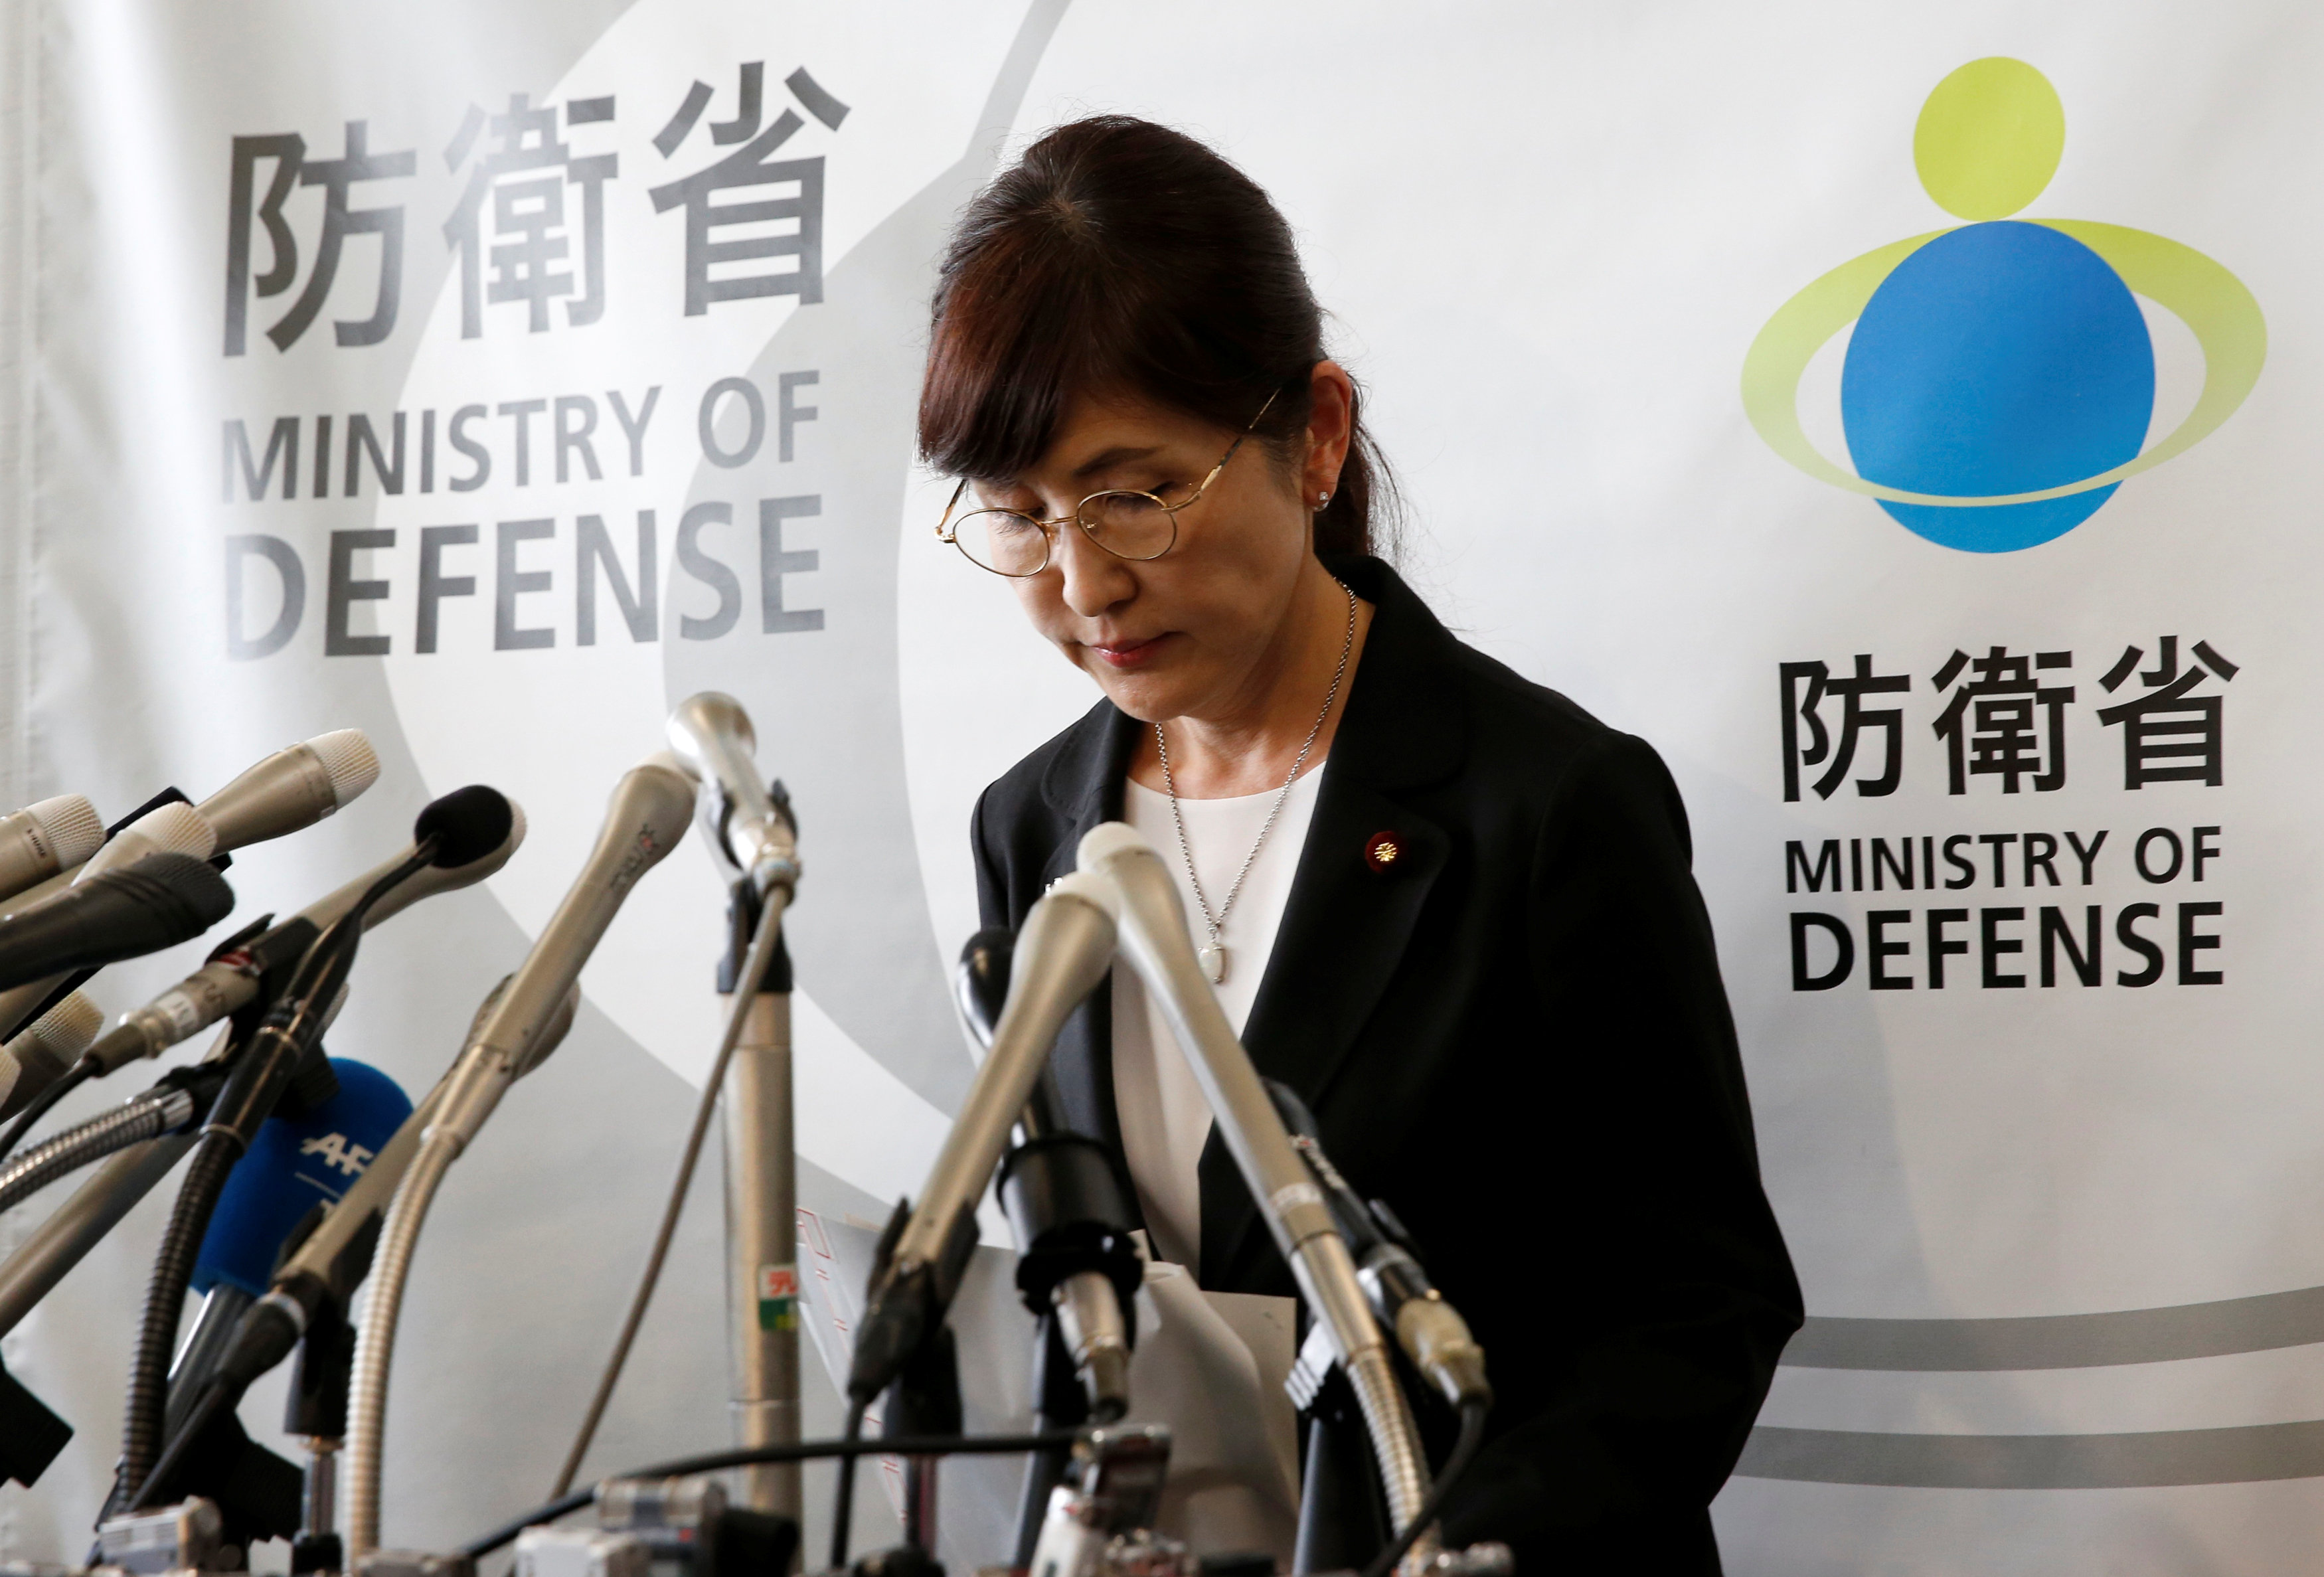 وزيرة الدفاع اليابانية تعلن استقالتها